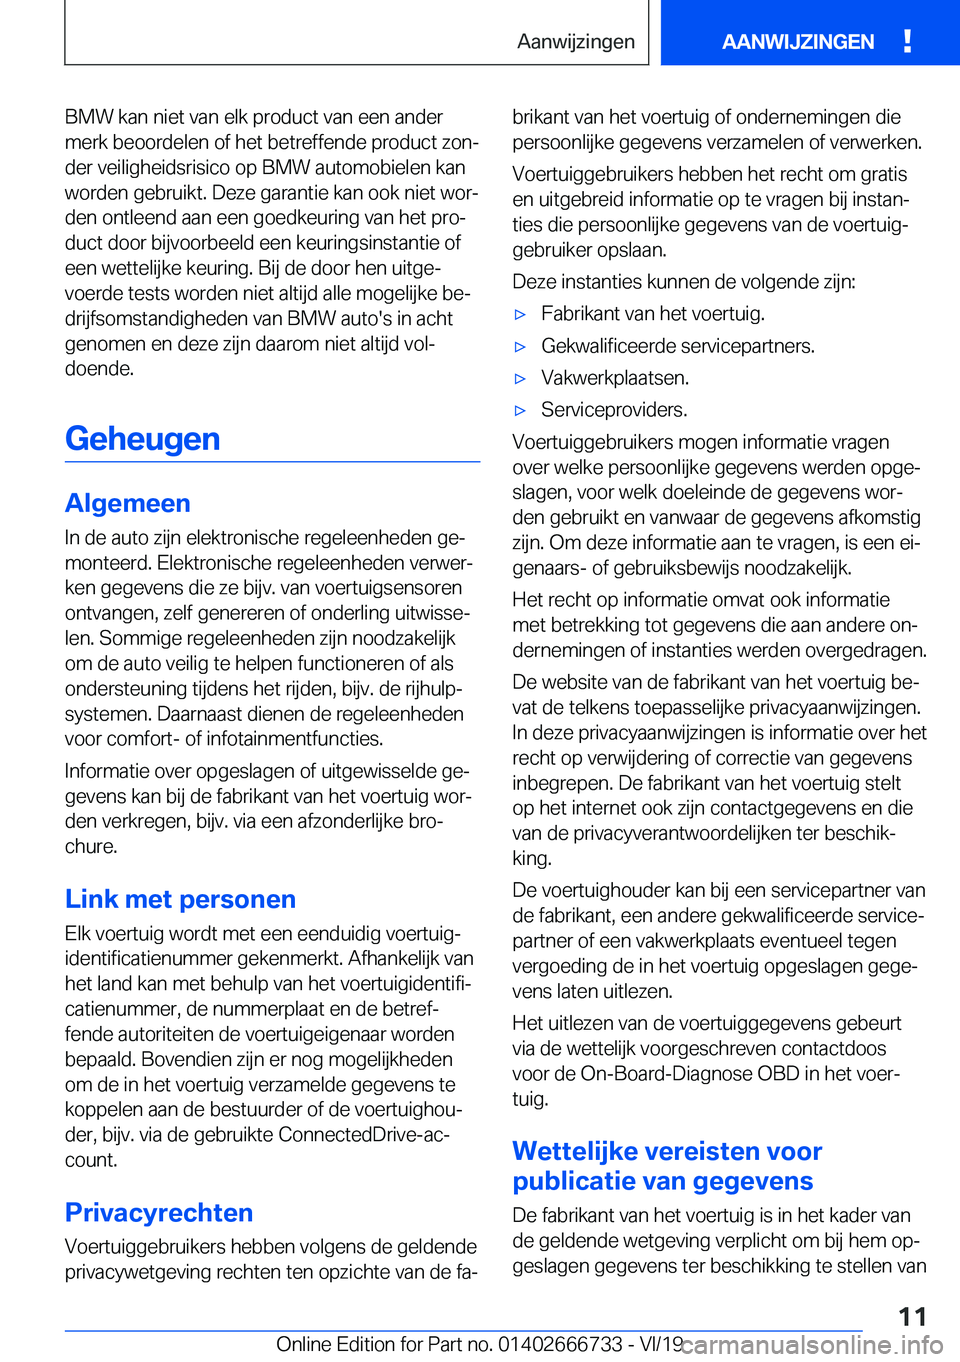 BMW M5 2020  Instructieboekjes (in Dutch) �B�M�W��k�a�n��n�i�e�t��v�a�n��e�l�k��p�r�o�d�u�c�t��v�a�n��e�e�n��a�n�d�e�r�m�e�r�k��b�e�o�o�r�d�e�l�e�n��o�f��h�e�t��b�e�t�r�e�f�f�e�n�d�e��p�r�o�d�u�c�t��z�o�nj
�d�e�r��v�e�i�l�i�g�